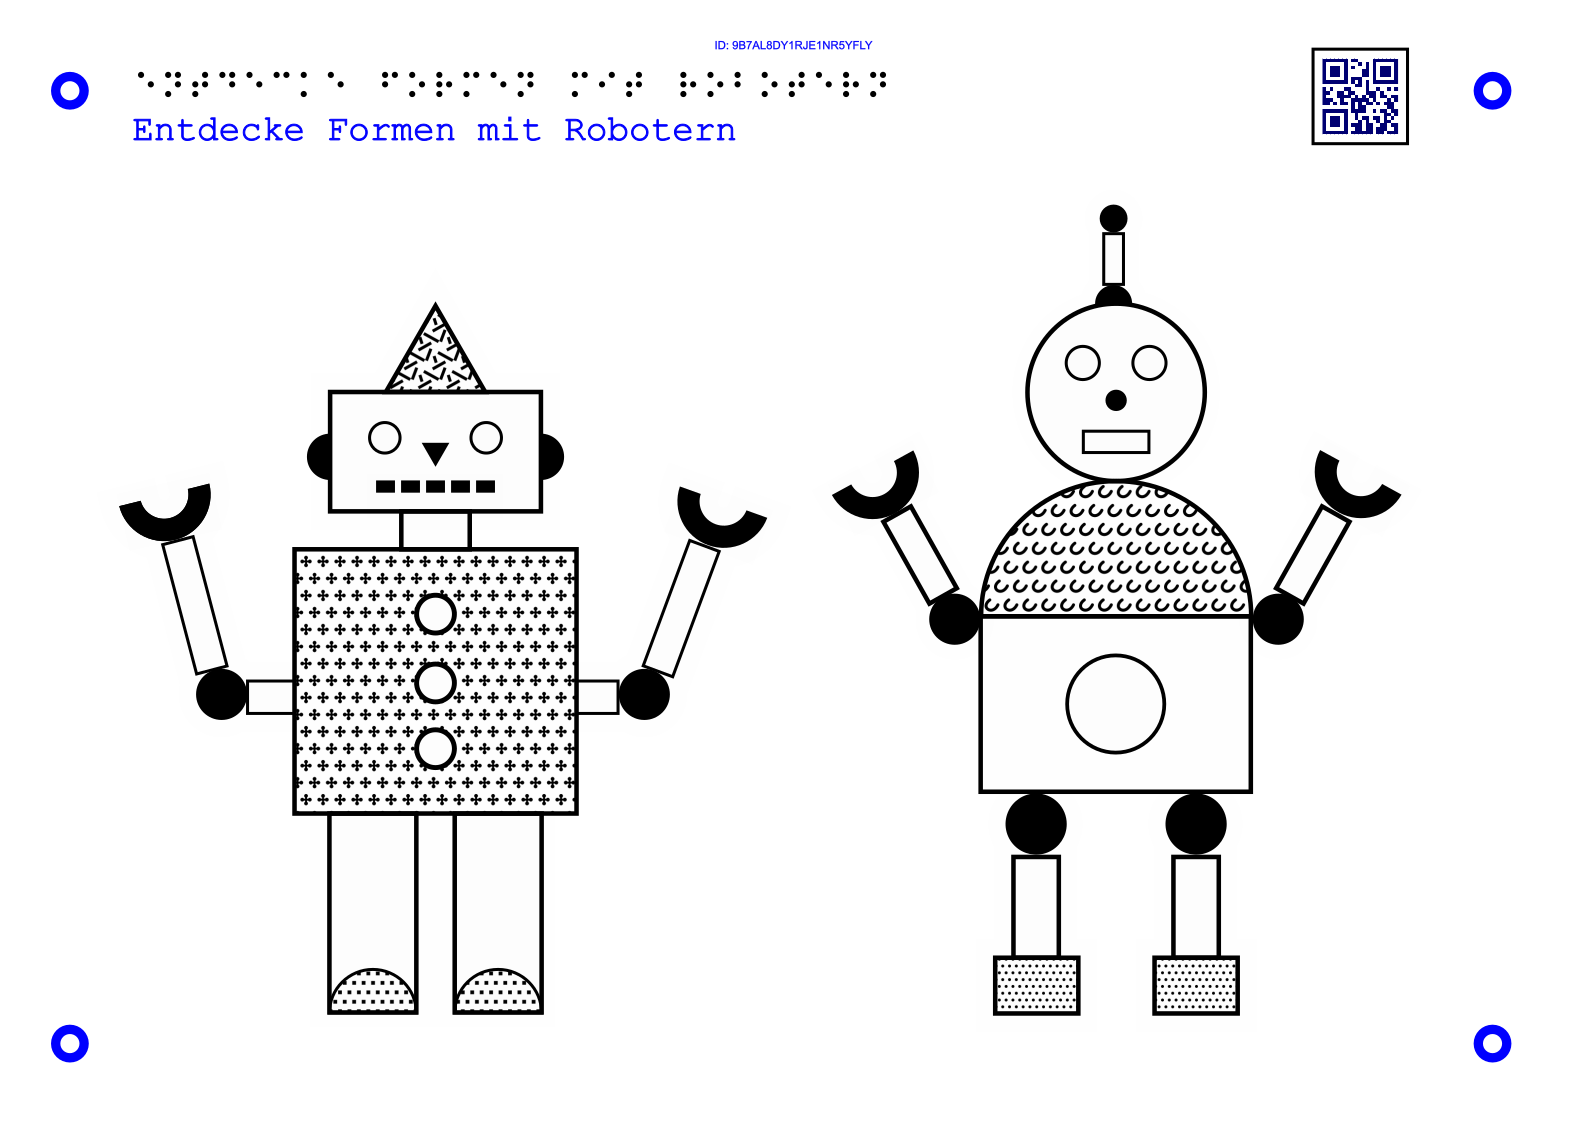 11Taktile Grafik, die zwei Roboter zeigt, welche aus geometrischen Formen bestehen.